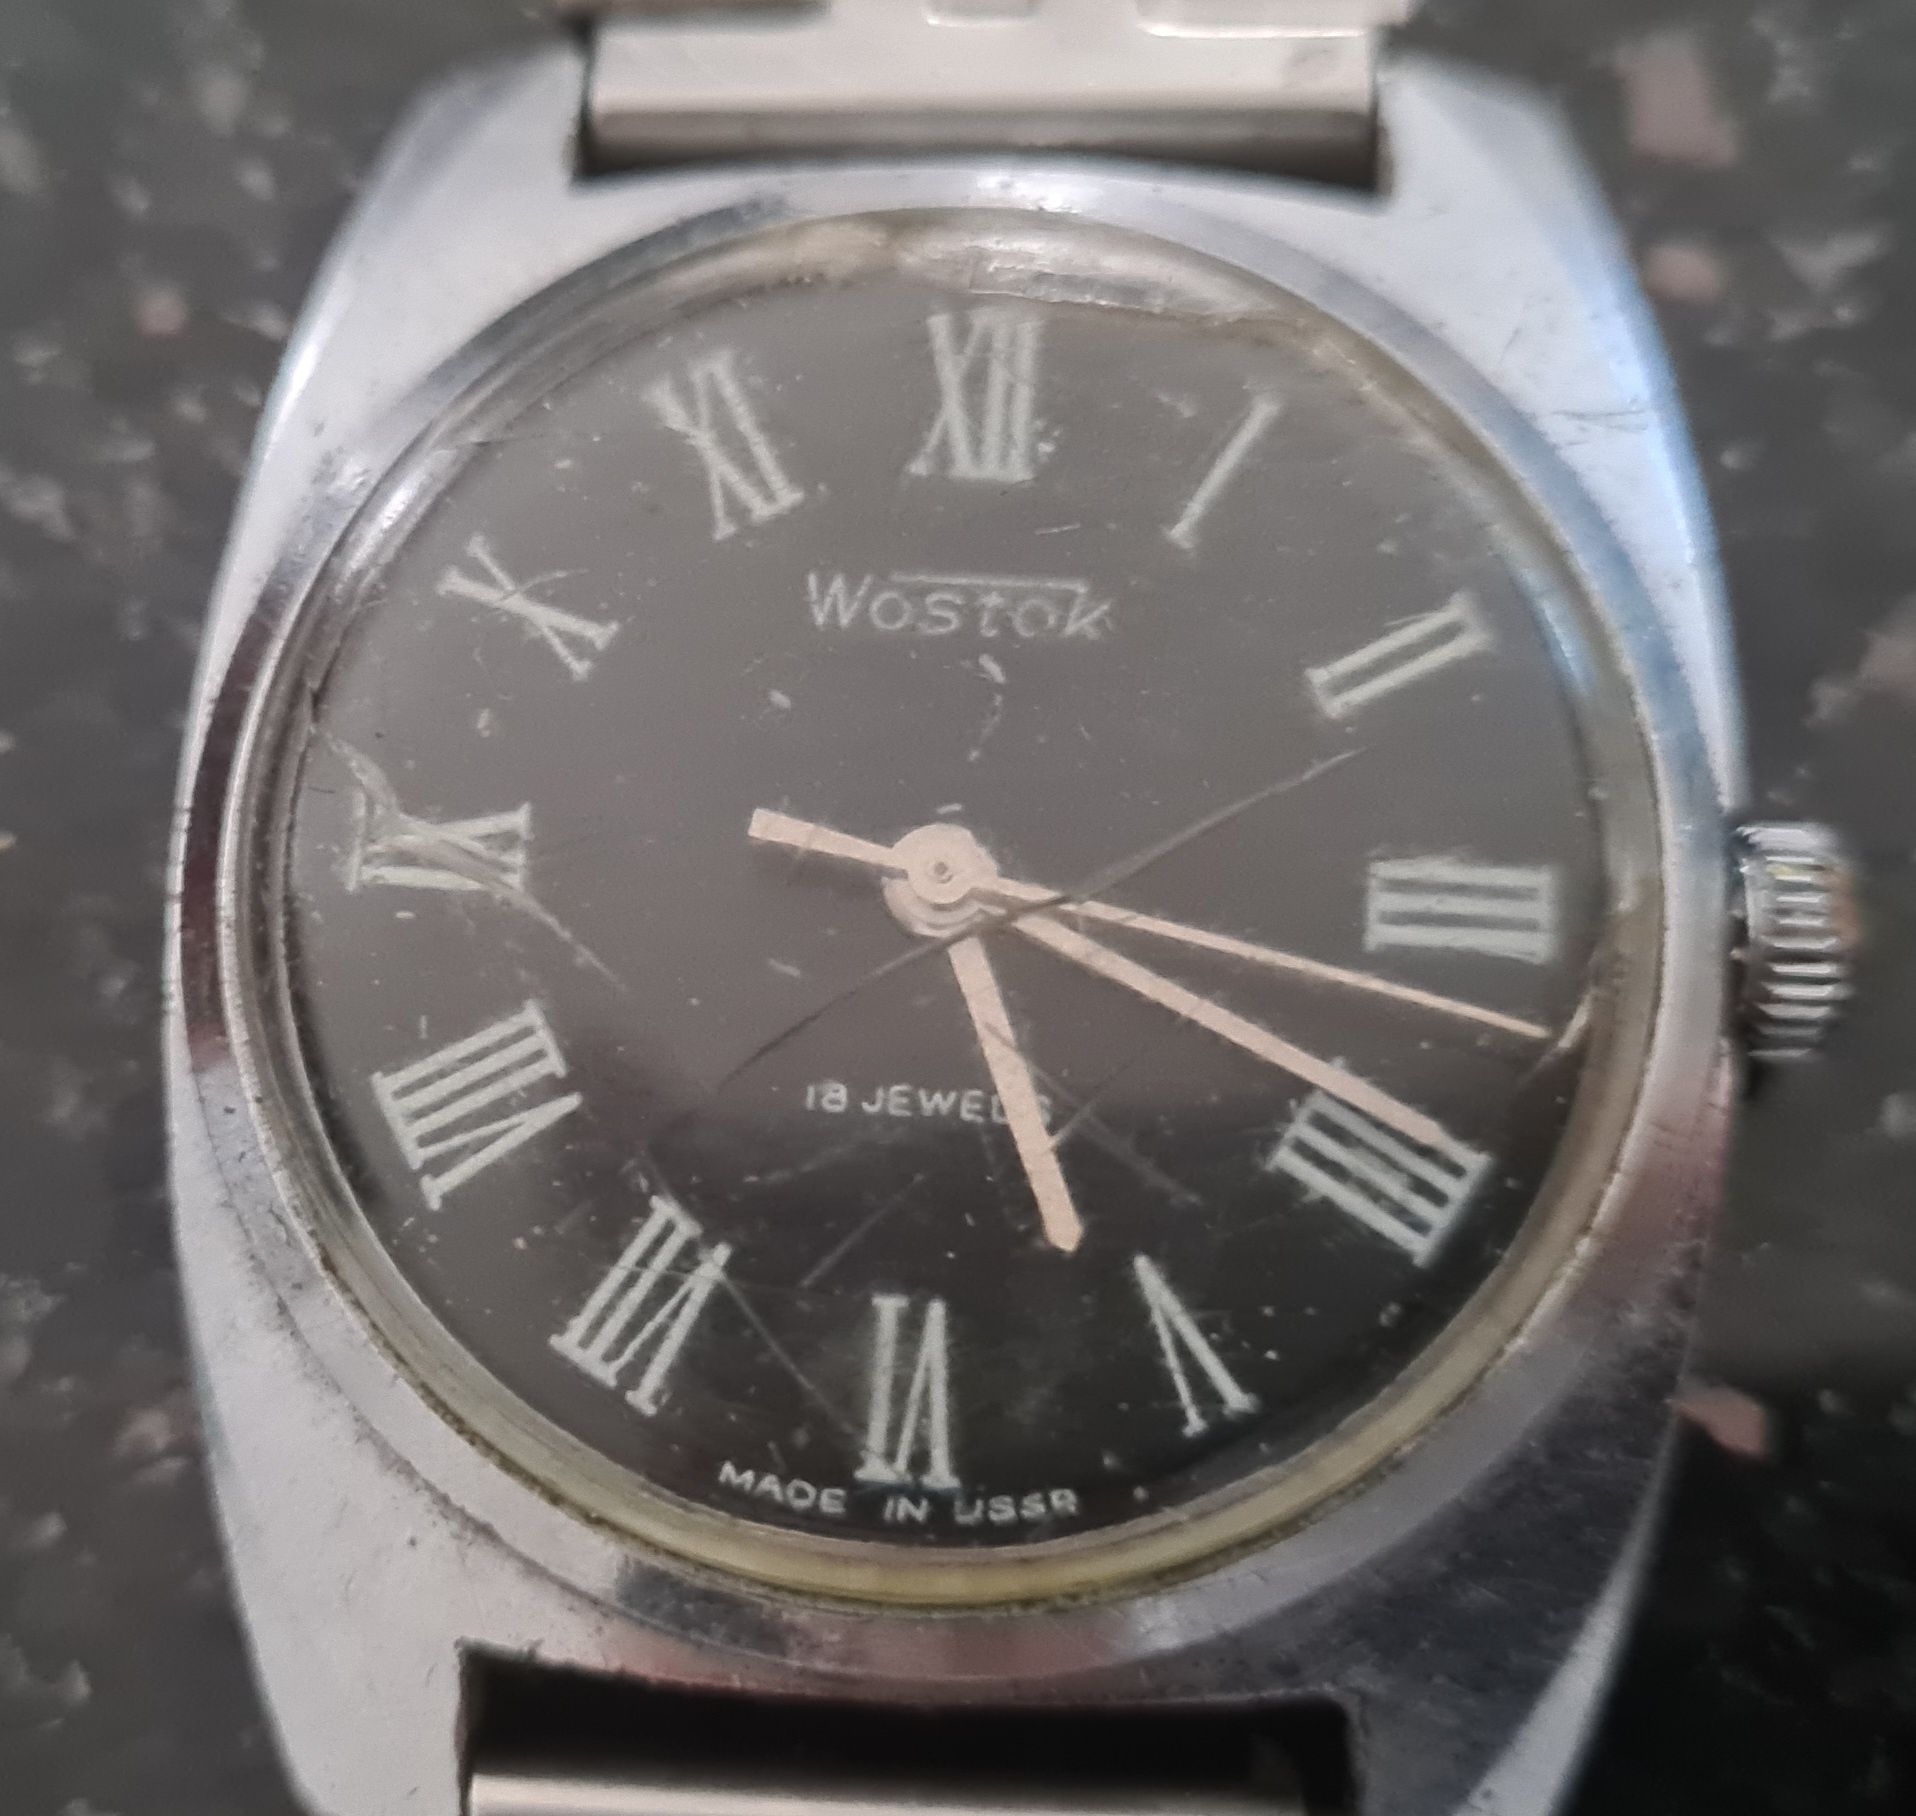 Oryginalny Rosyjski zegarek Wostok 18 kamieni z bransoletą, uszkodzony